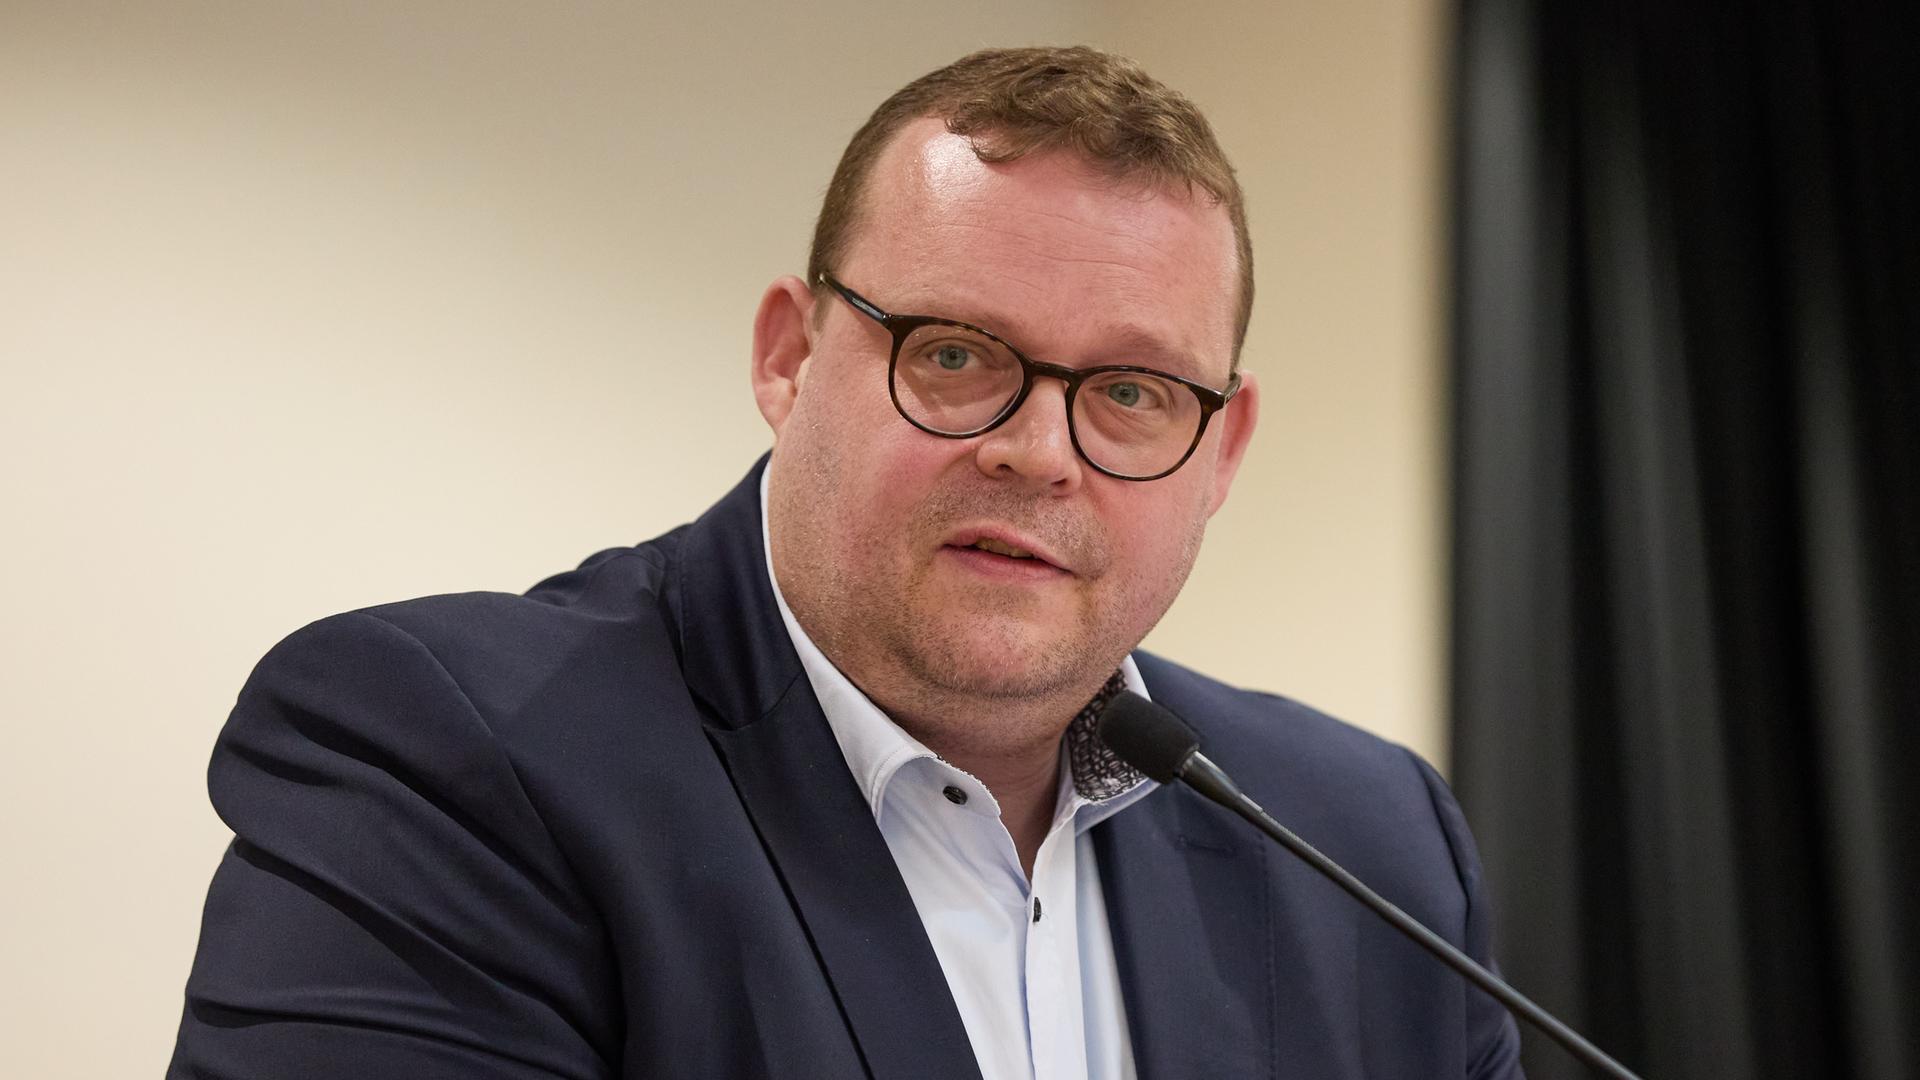 Zu sehen ist Ansgar Schledde, stellvertretender Landesvorsitzender der AfD Niedersachsen auf dem Landesparteitag am 20. April 2024. Ein korpulenter, mittelalter Mann im dunklen Jackett mit weißem Hemd sitzt an einem Mikrofon.